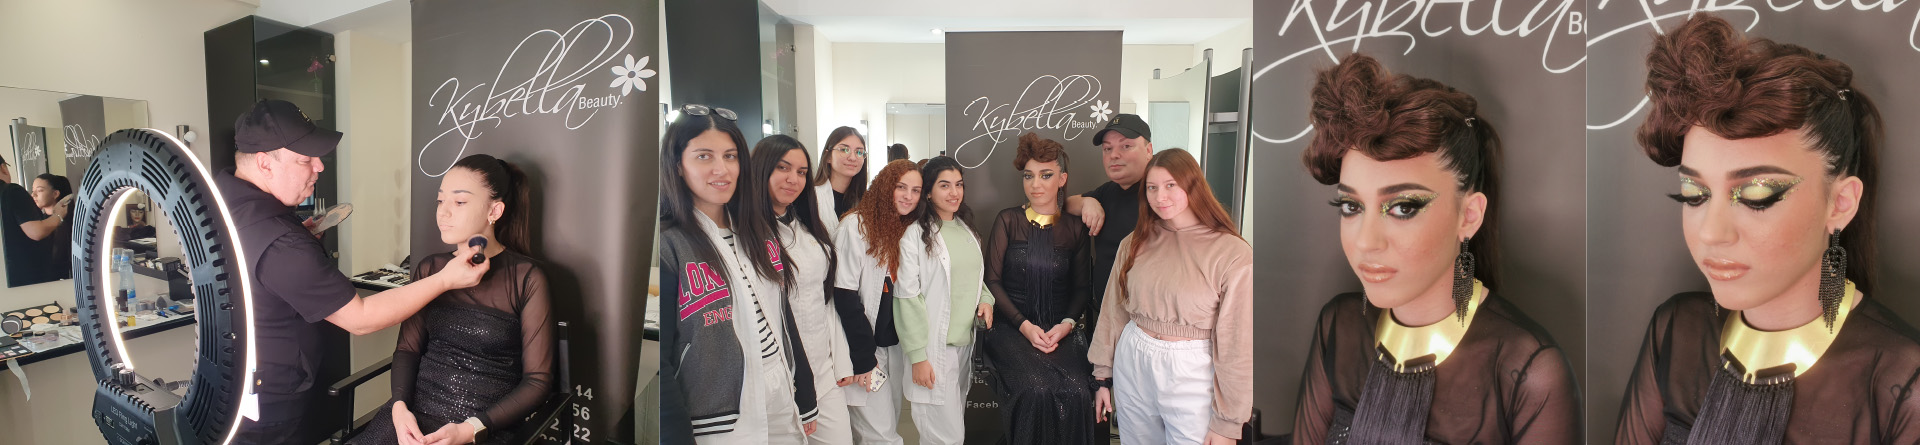 Παρουσίαση Creative Beauty Glam Make Up  από τον Makeup Artist της εταιρείας Kybella Beauty Ltd  στις φοιτήτριες της Αισθητικής του KES COLLEGE